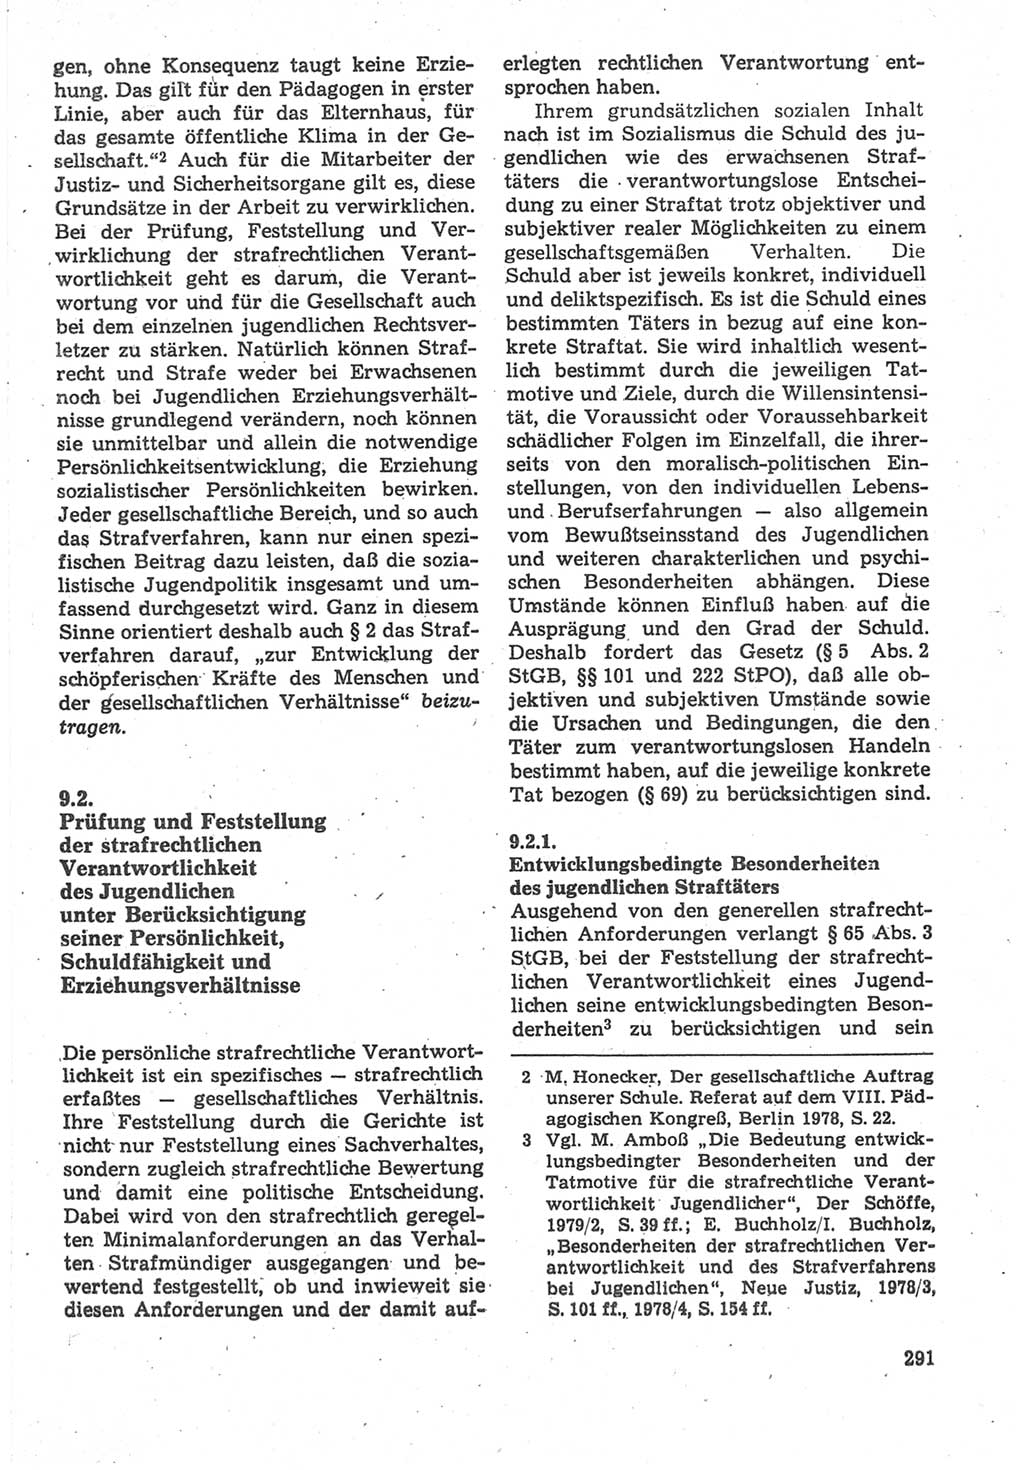 Strafverfahrensrecht [Deutsche Demokratische Republik (DDR)], Lehrbuch 1987, Seite 291 (Strafverf.-R. DDR Lb. 1987, S. 291)